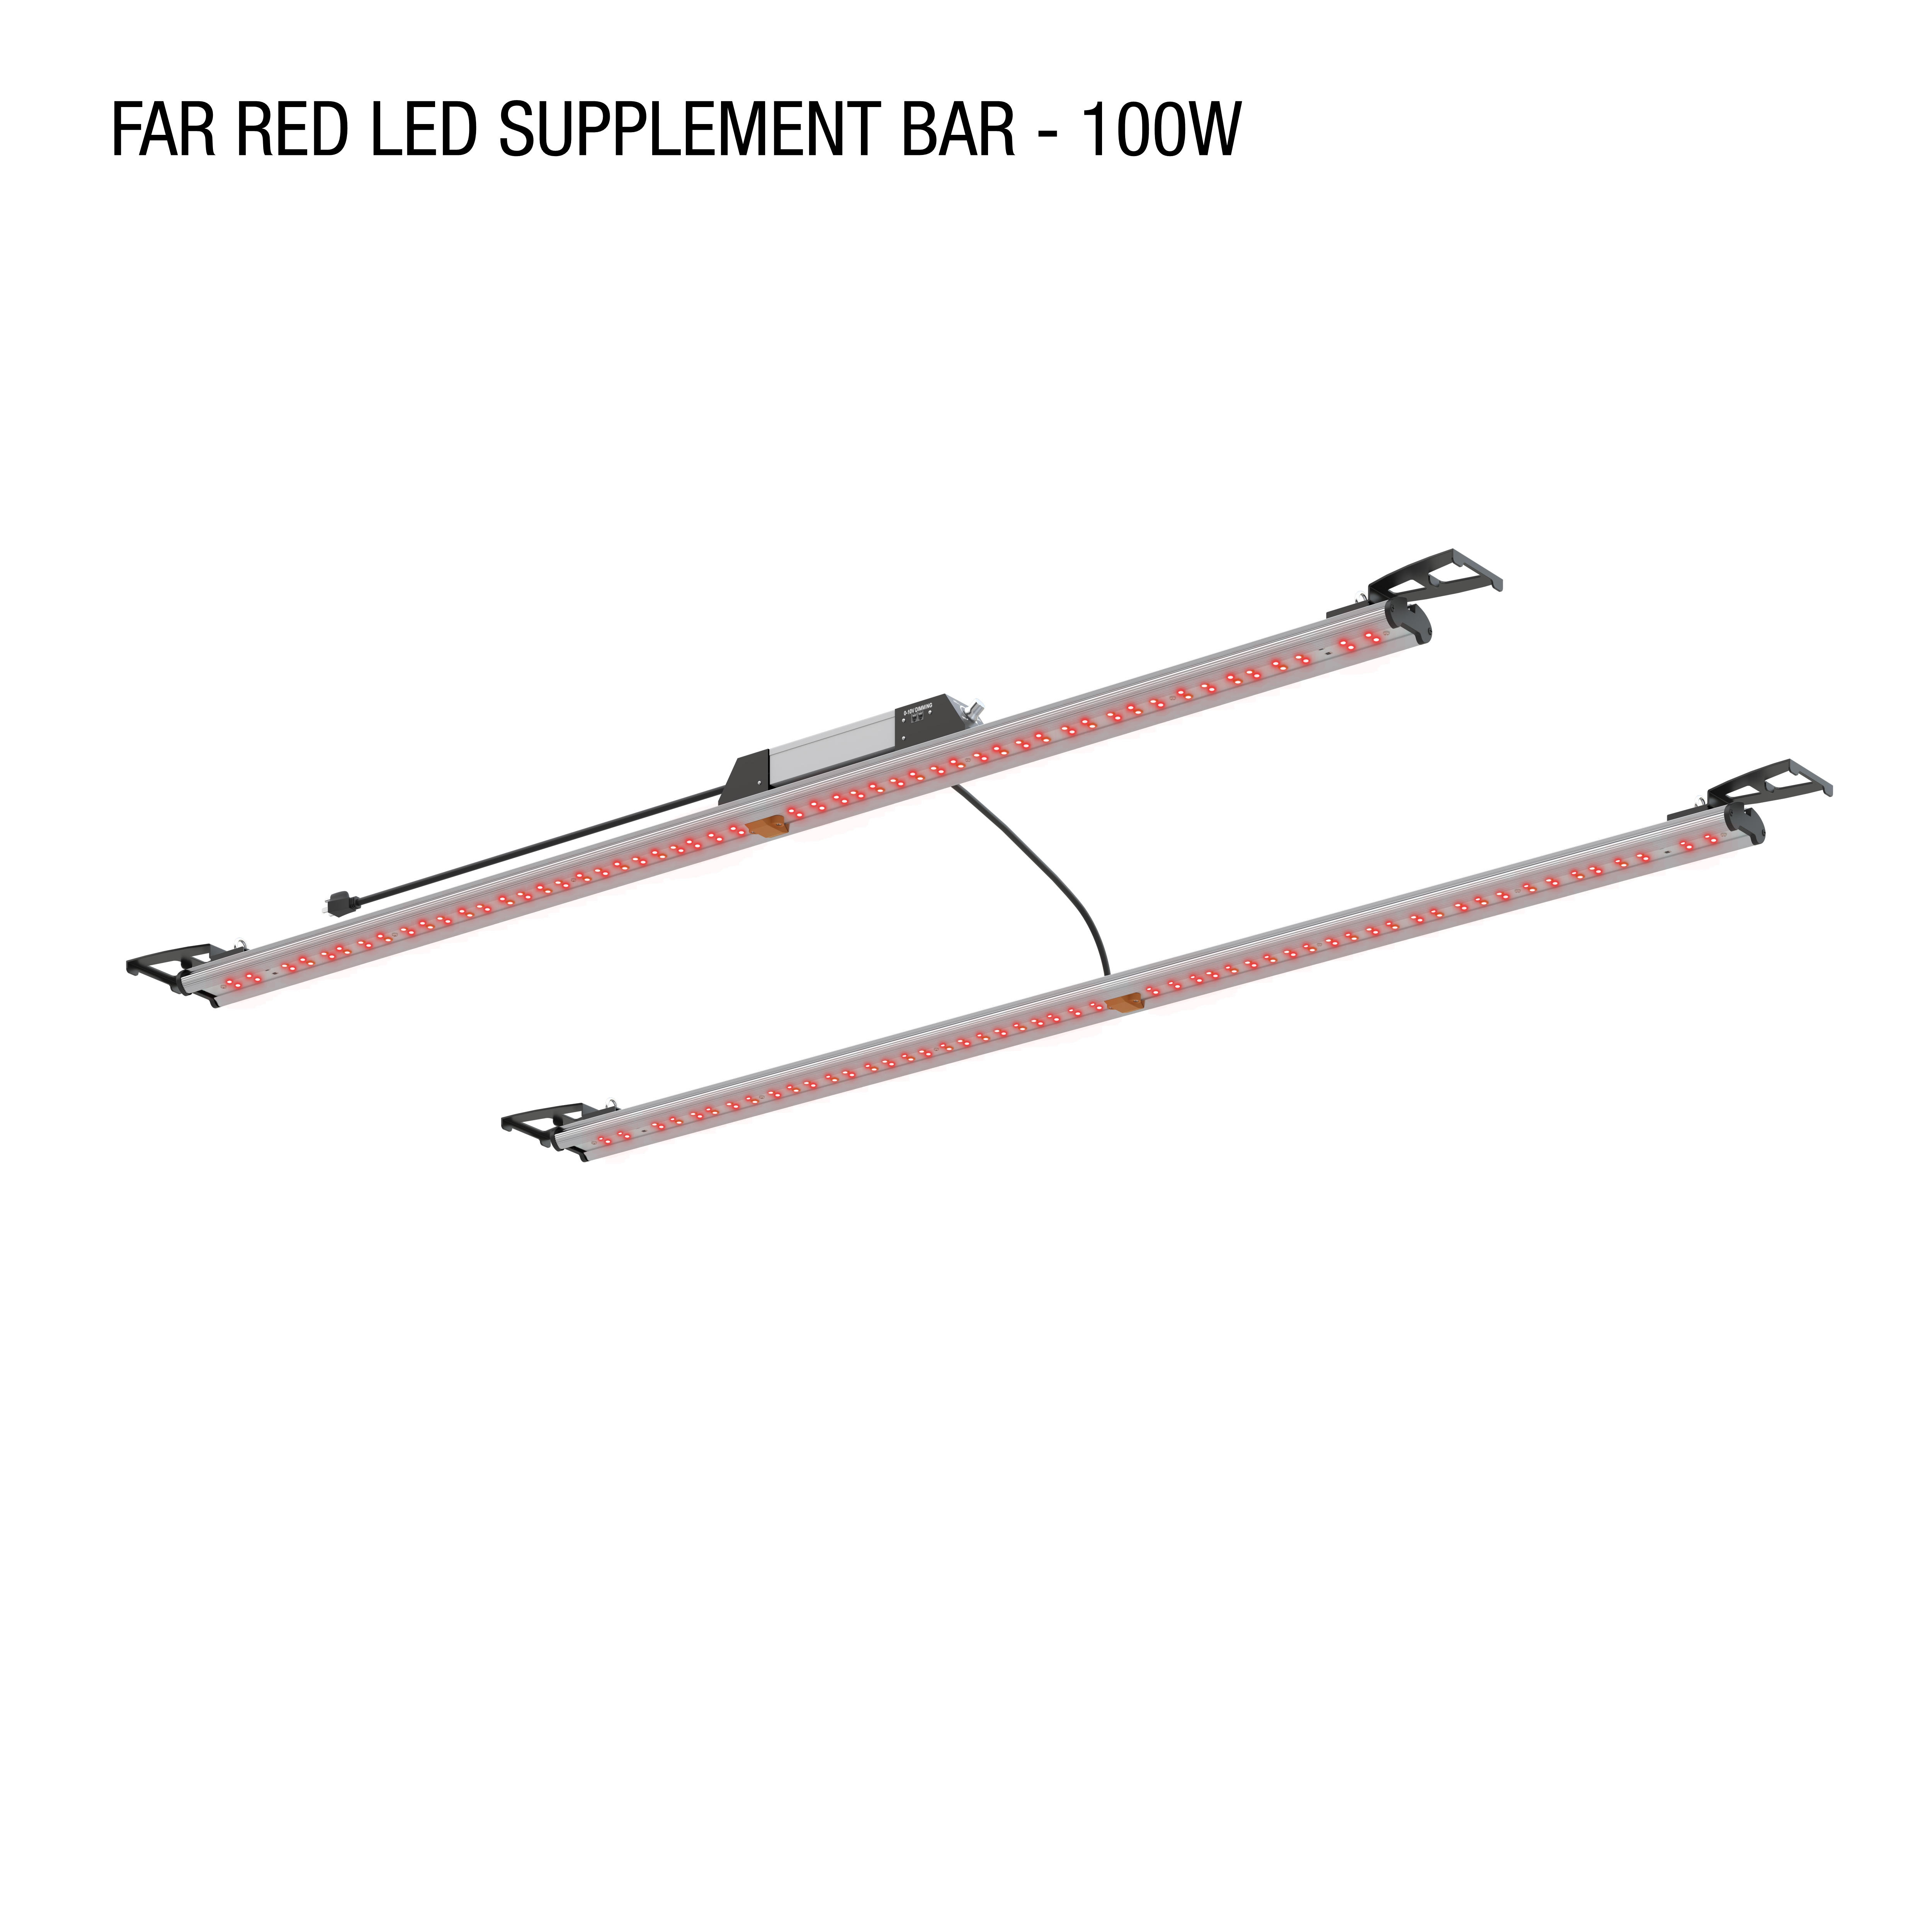 Far Red Supplemental Spectrum Light Bars - 100W